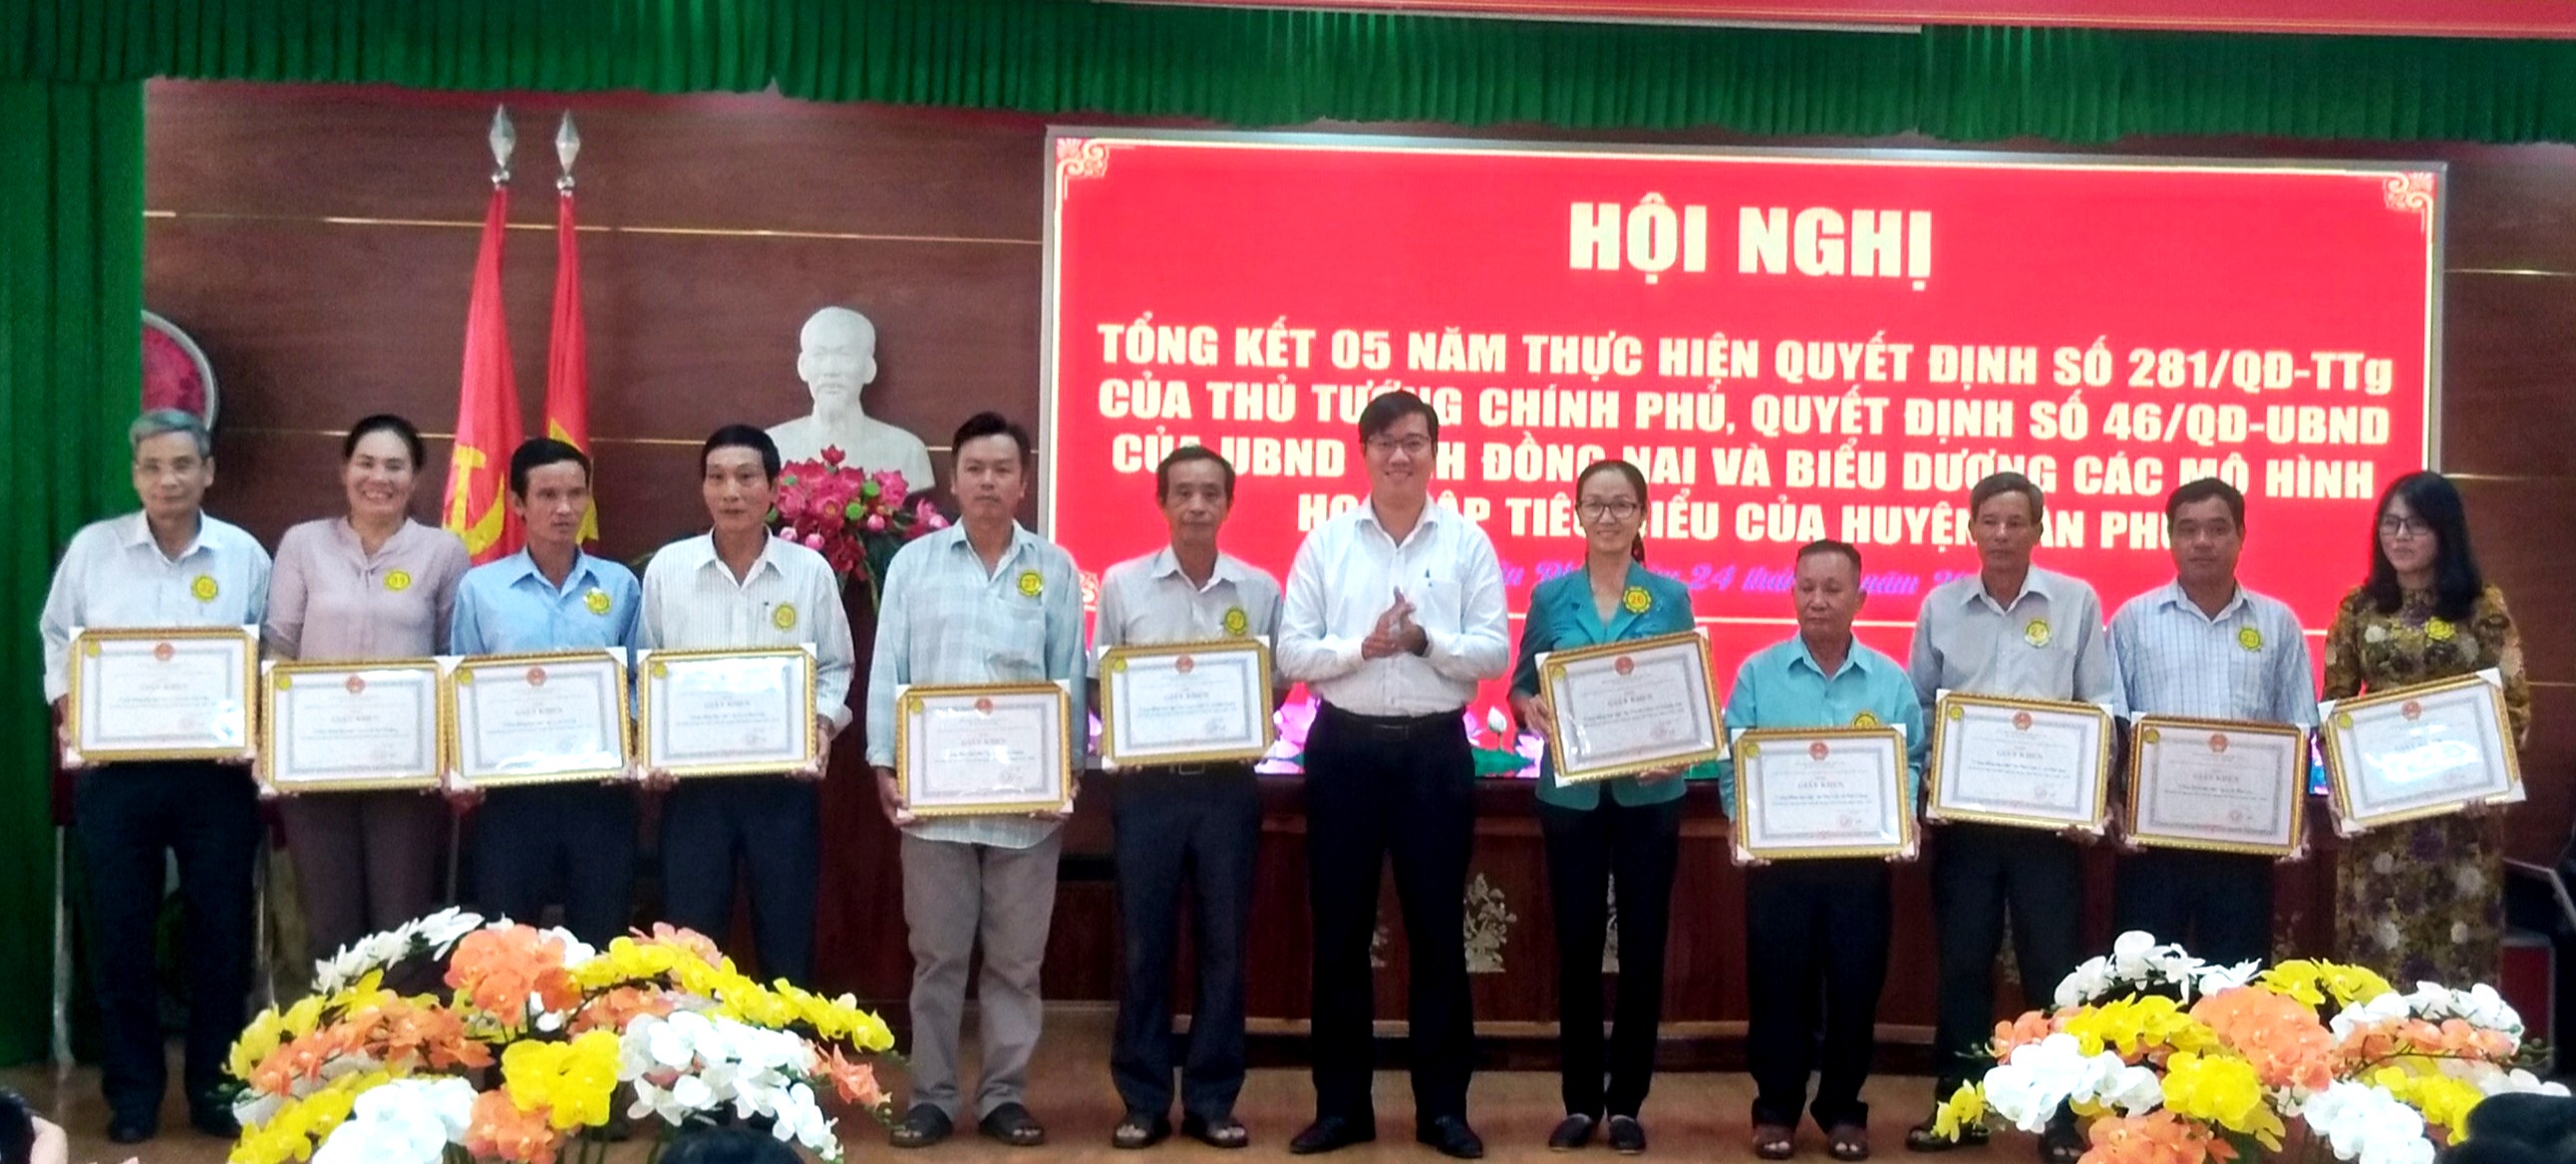 PCT UBND huyện Bùi Thanh Nam trao tặng giấy khen cho các tập thể và cá nhân đạt thành tích trong phong trào khuyến học.jpg